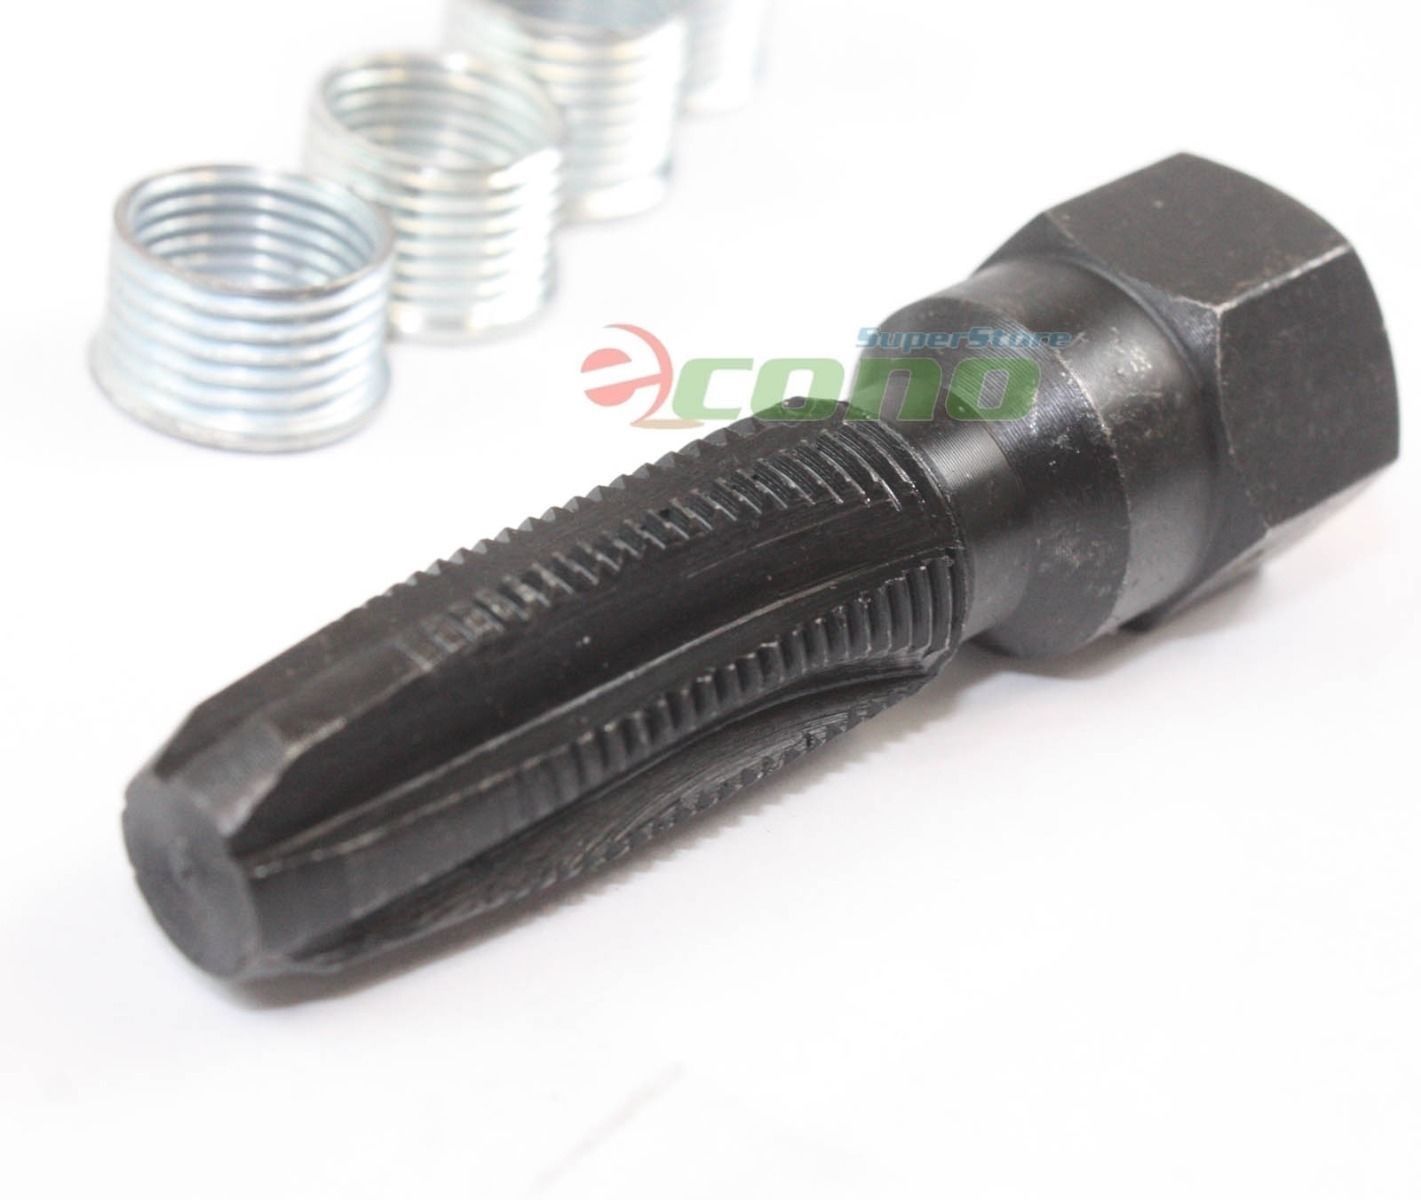 14mm Rethreader Re-Thread Rethread Tap Tool Spark Plug Insert Kit 